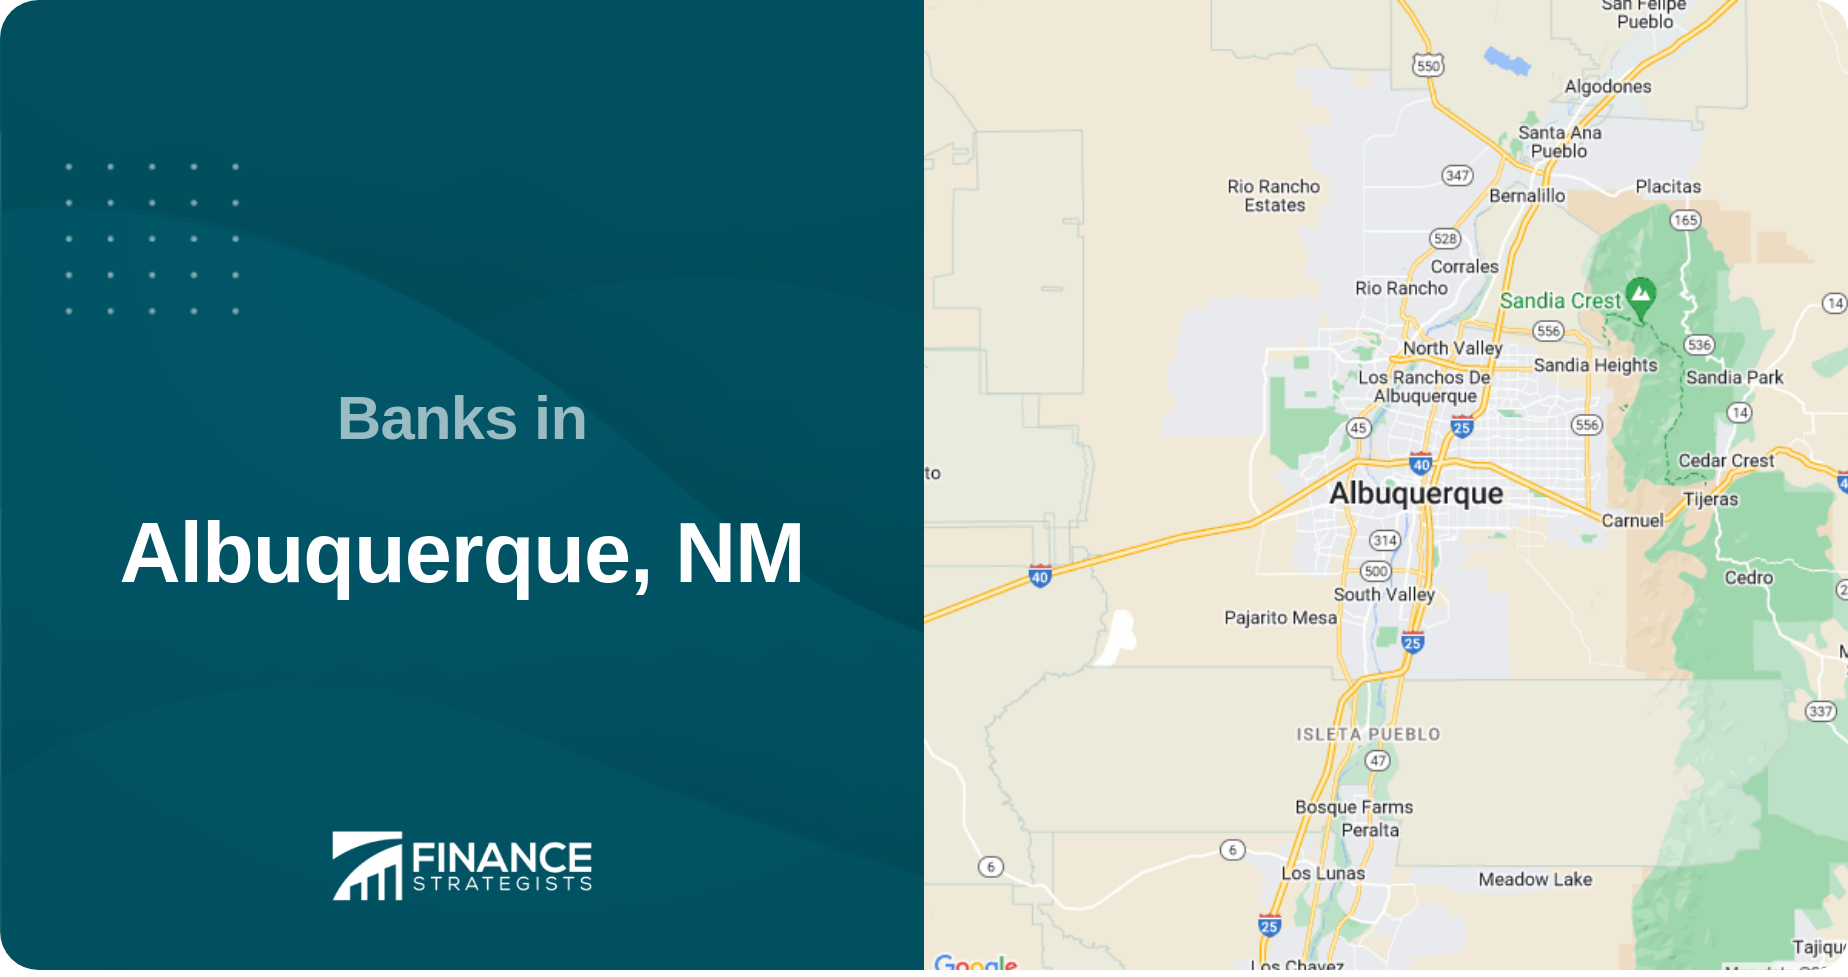 Banks in Albuquerque, NM